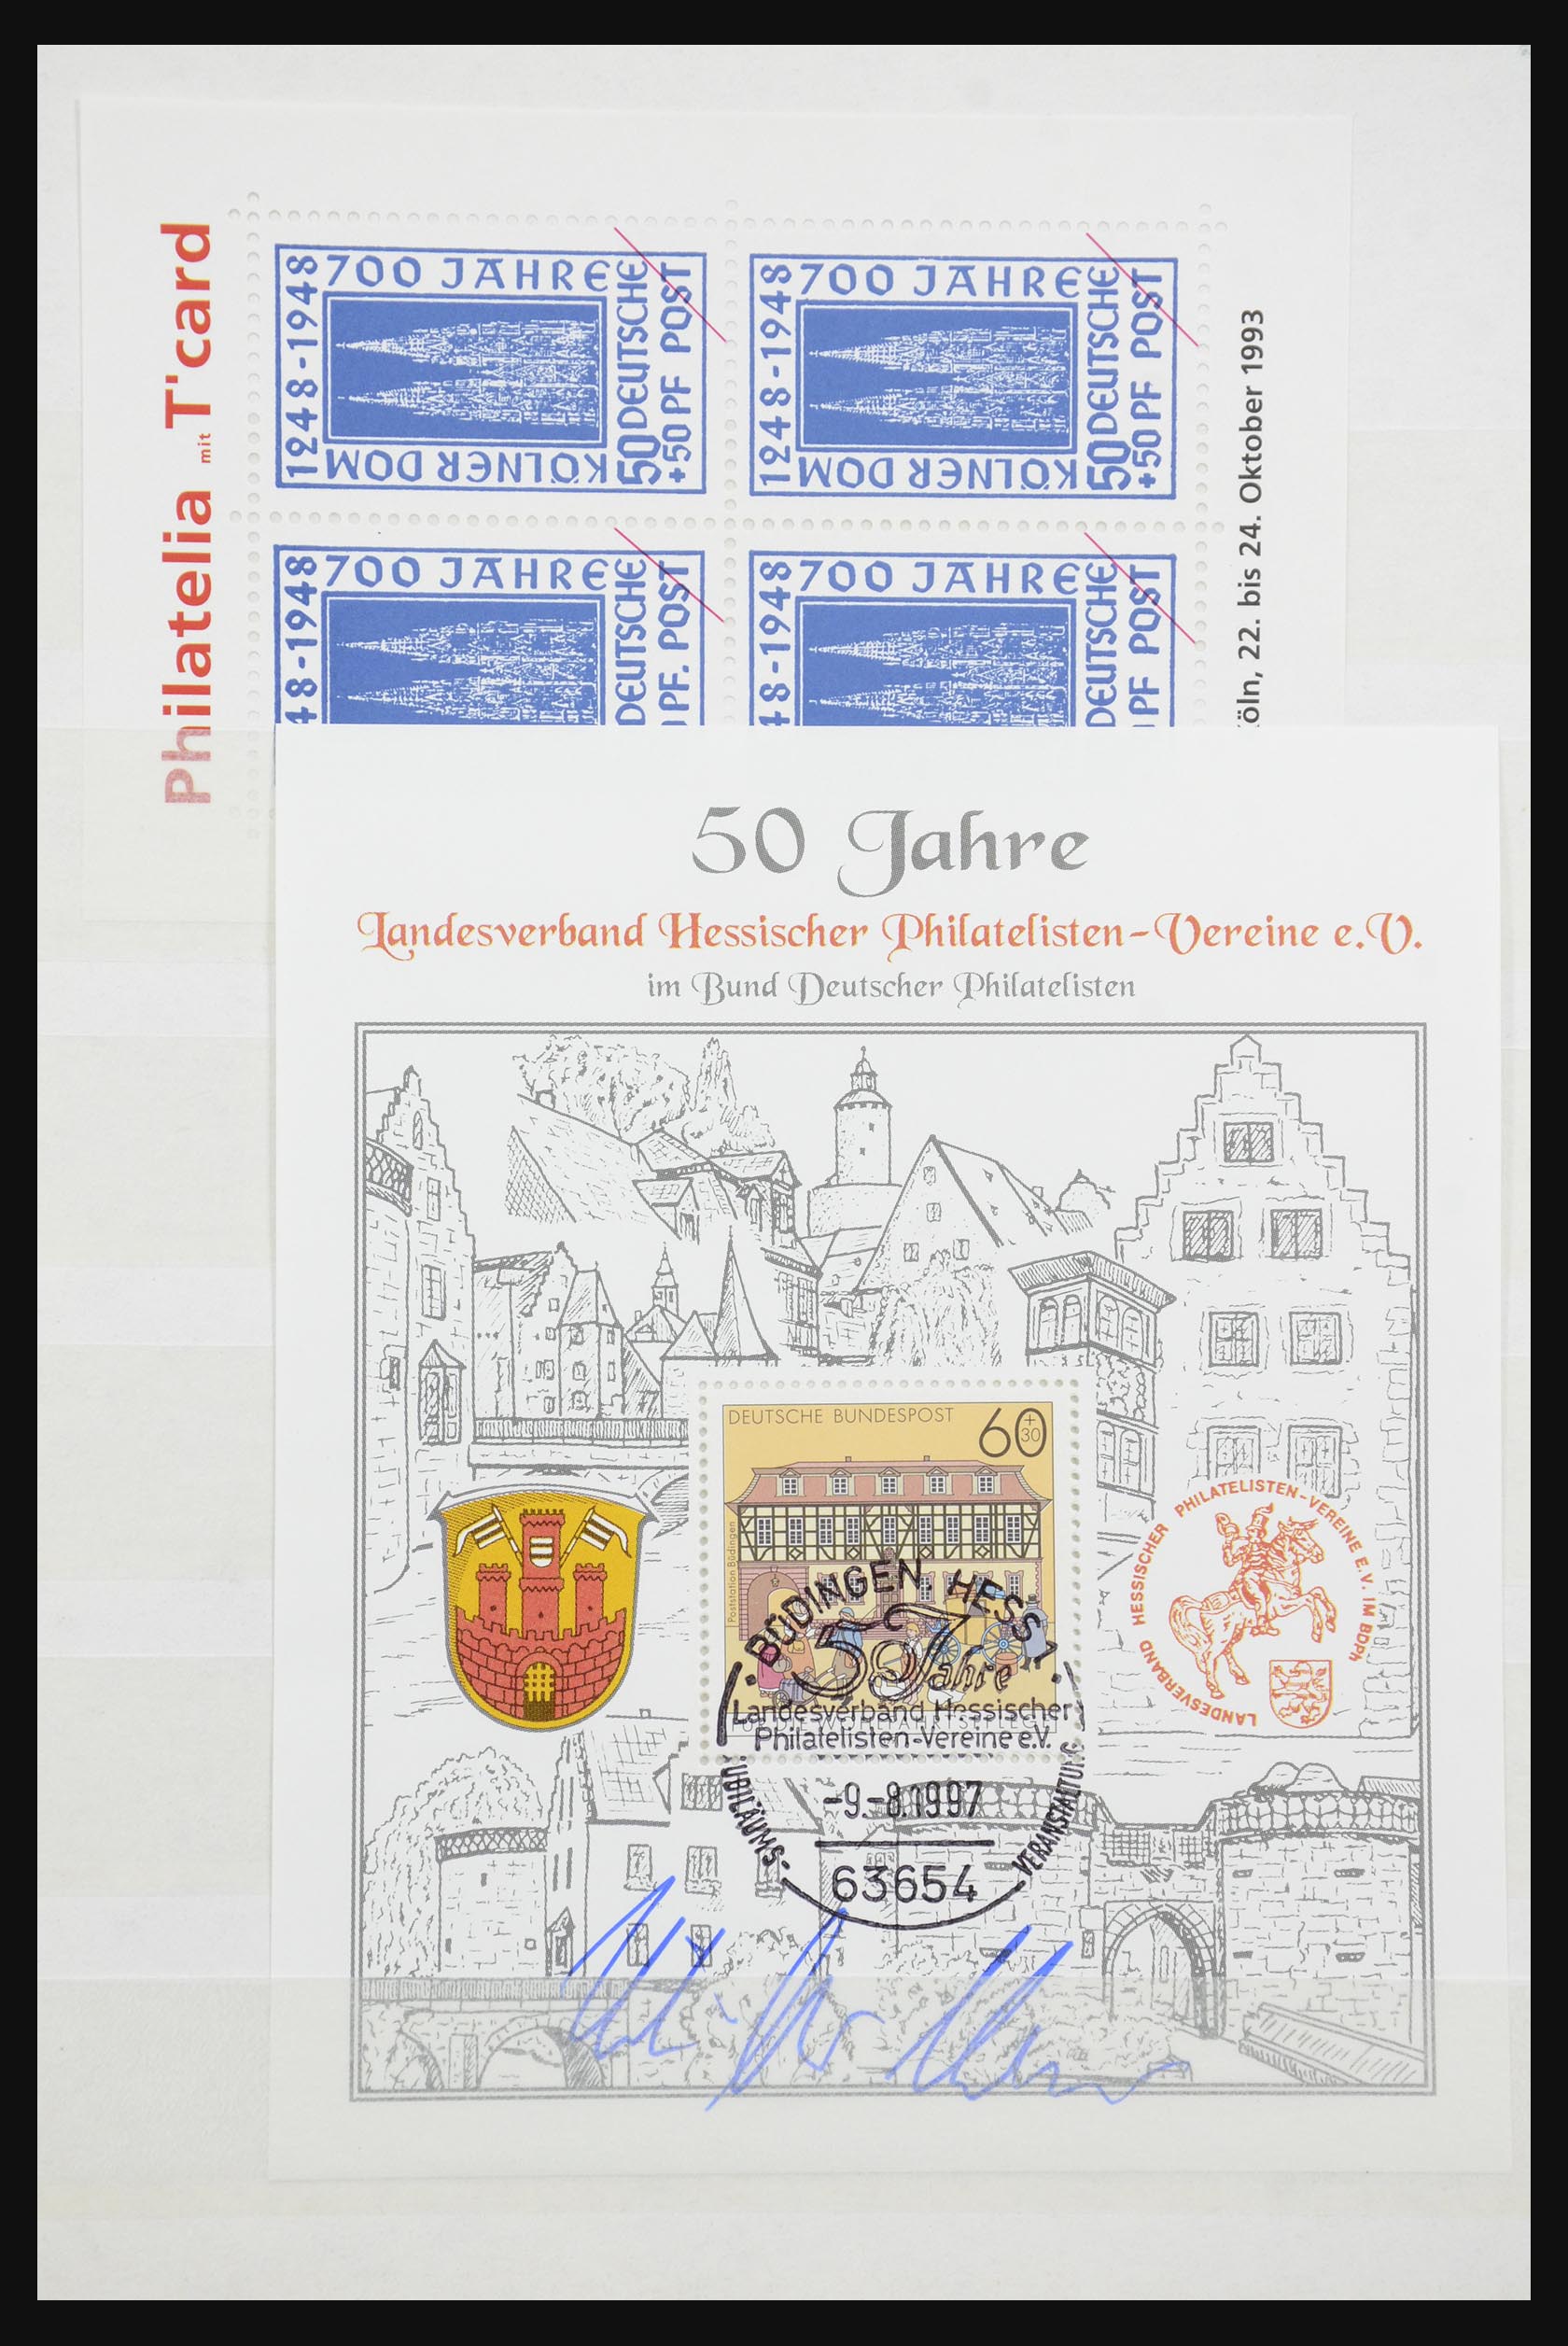 32050 050 - 32050 Bundespost speciale blokken 1980-2010.